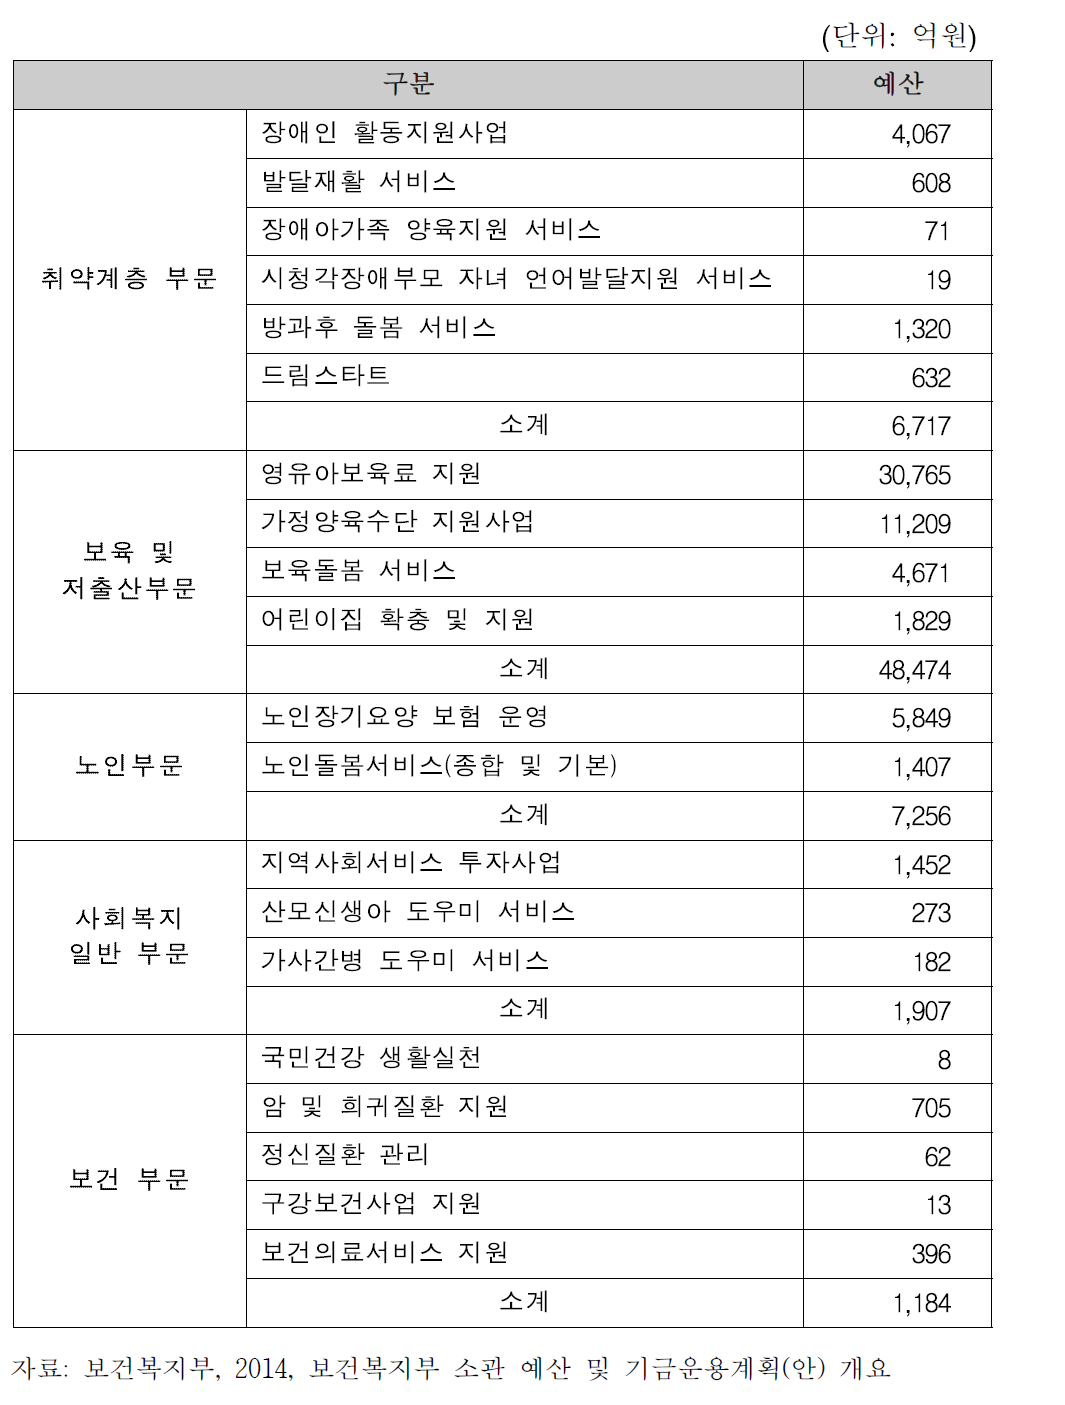 보건복지부 소관 주요 사회서비스 부문별 2014년 예산 규모